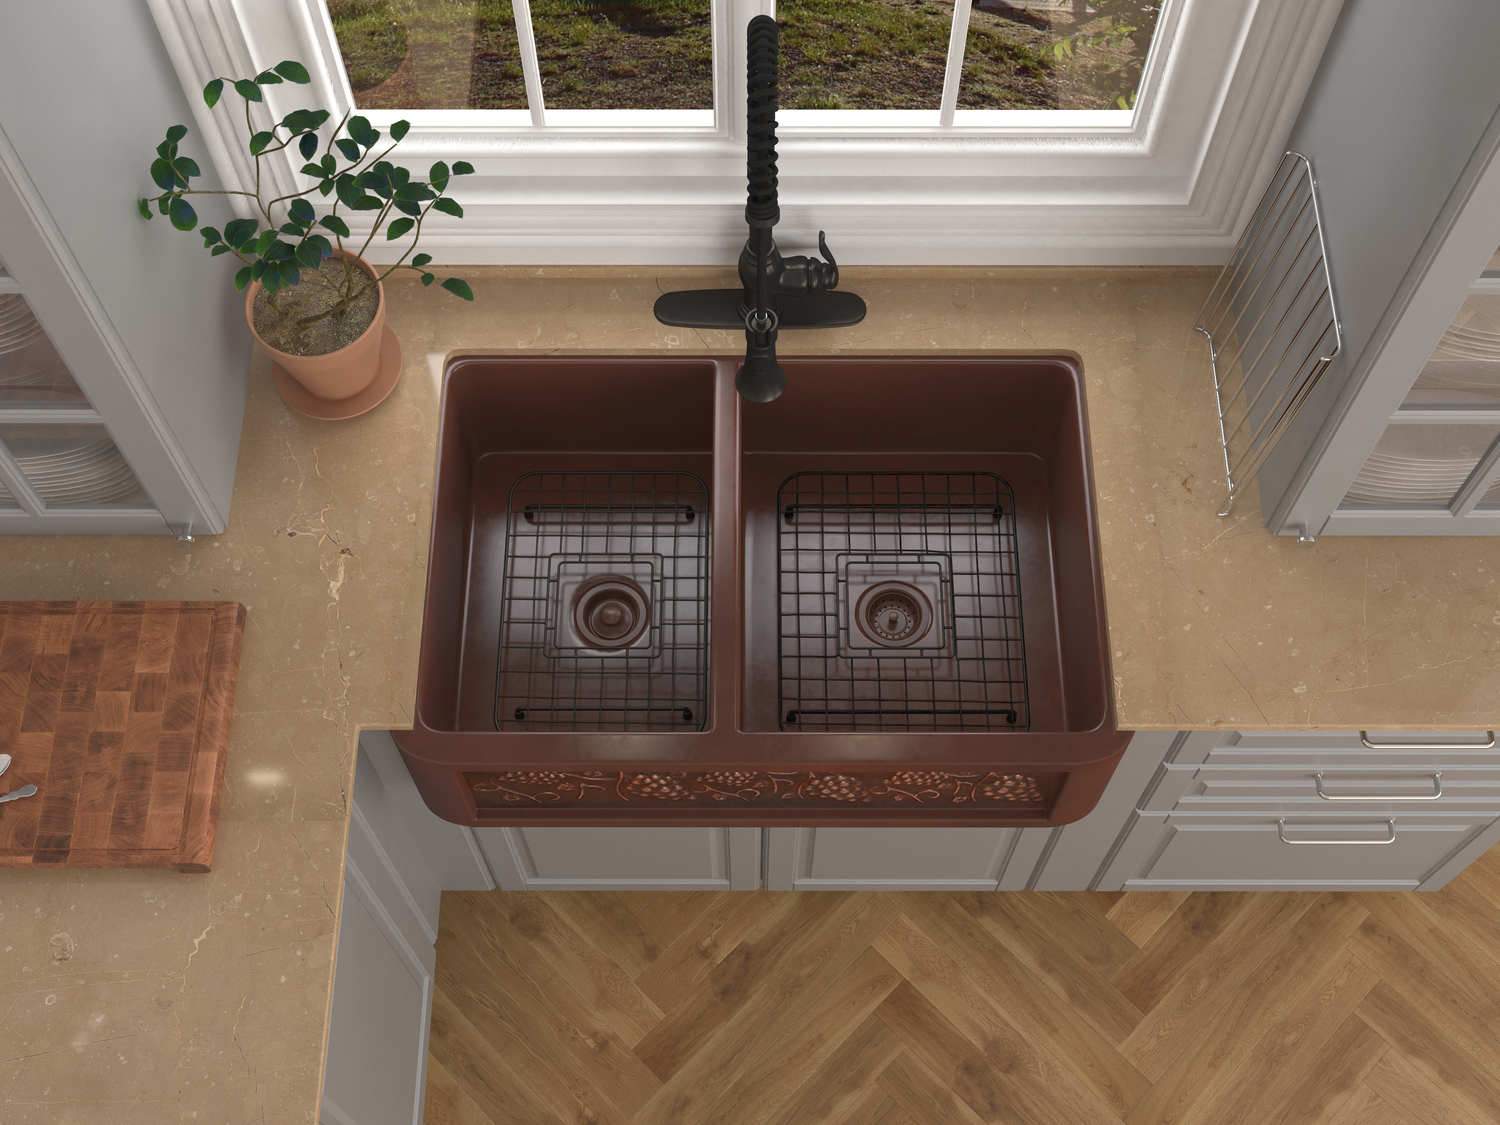 kitchen sink double undermount Anzzi KITCHEN - Kitchen Sinks - Farmhouse - Copper Copper